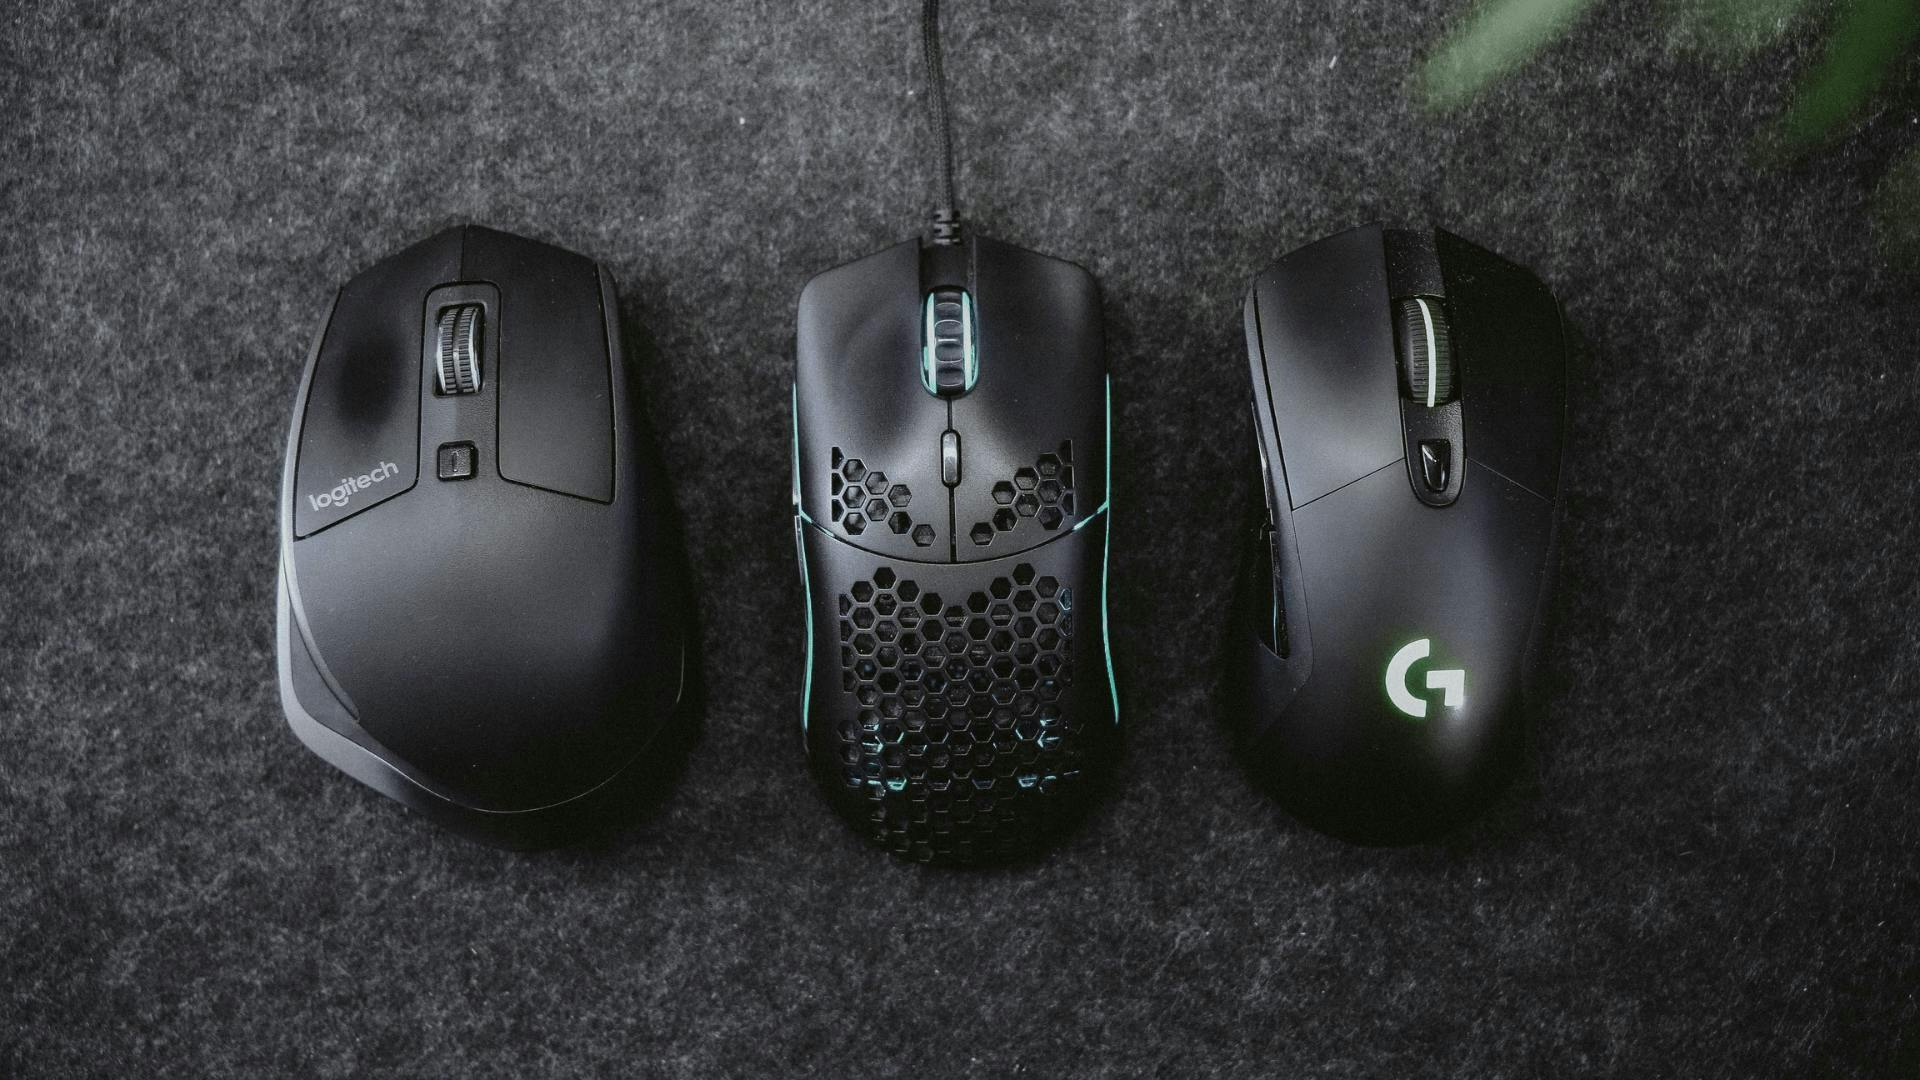 Drei Gaming Mäuse von verschiedenen Herstellern, mit und ohne Kabel, liegen nebeneinander